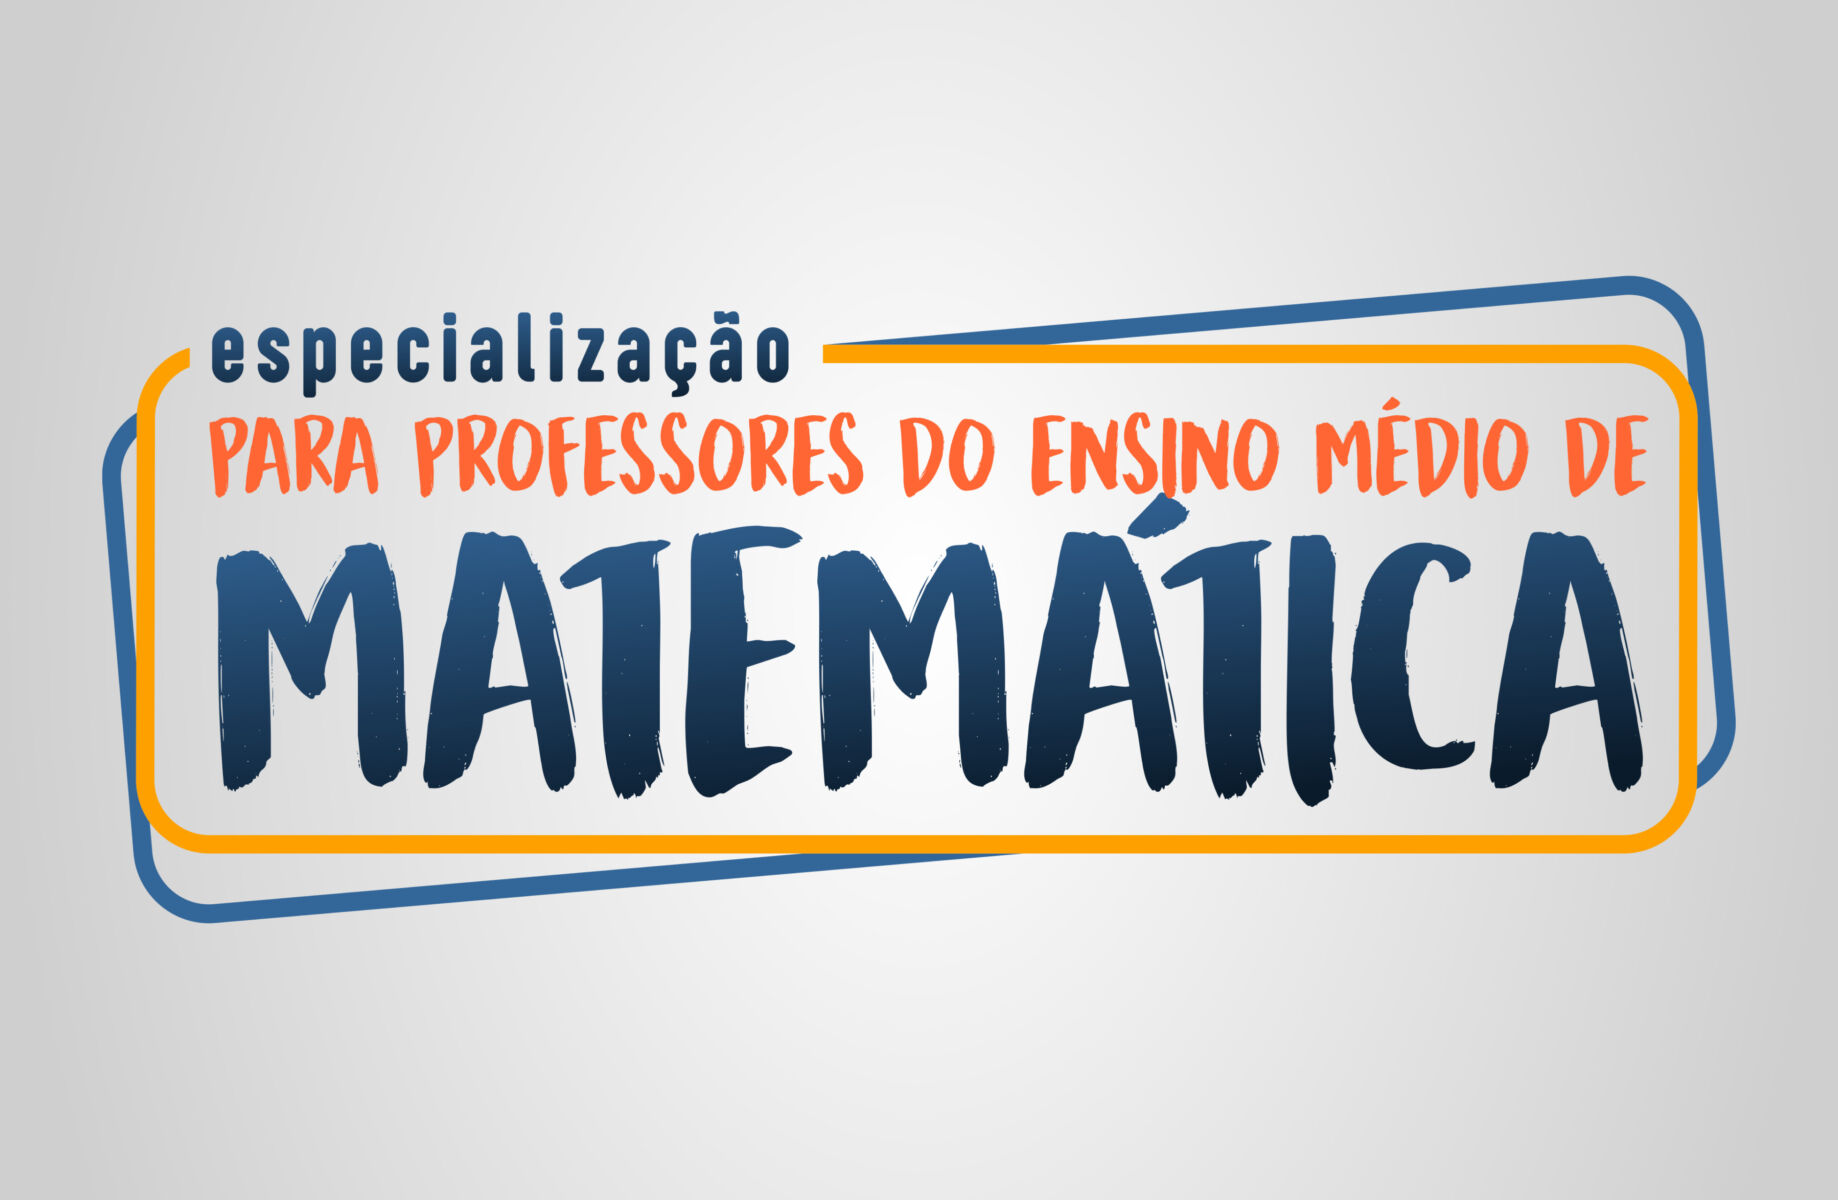 Especialização para Professores do Ensino Médio de Matemática